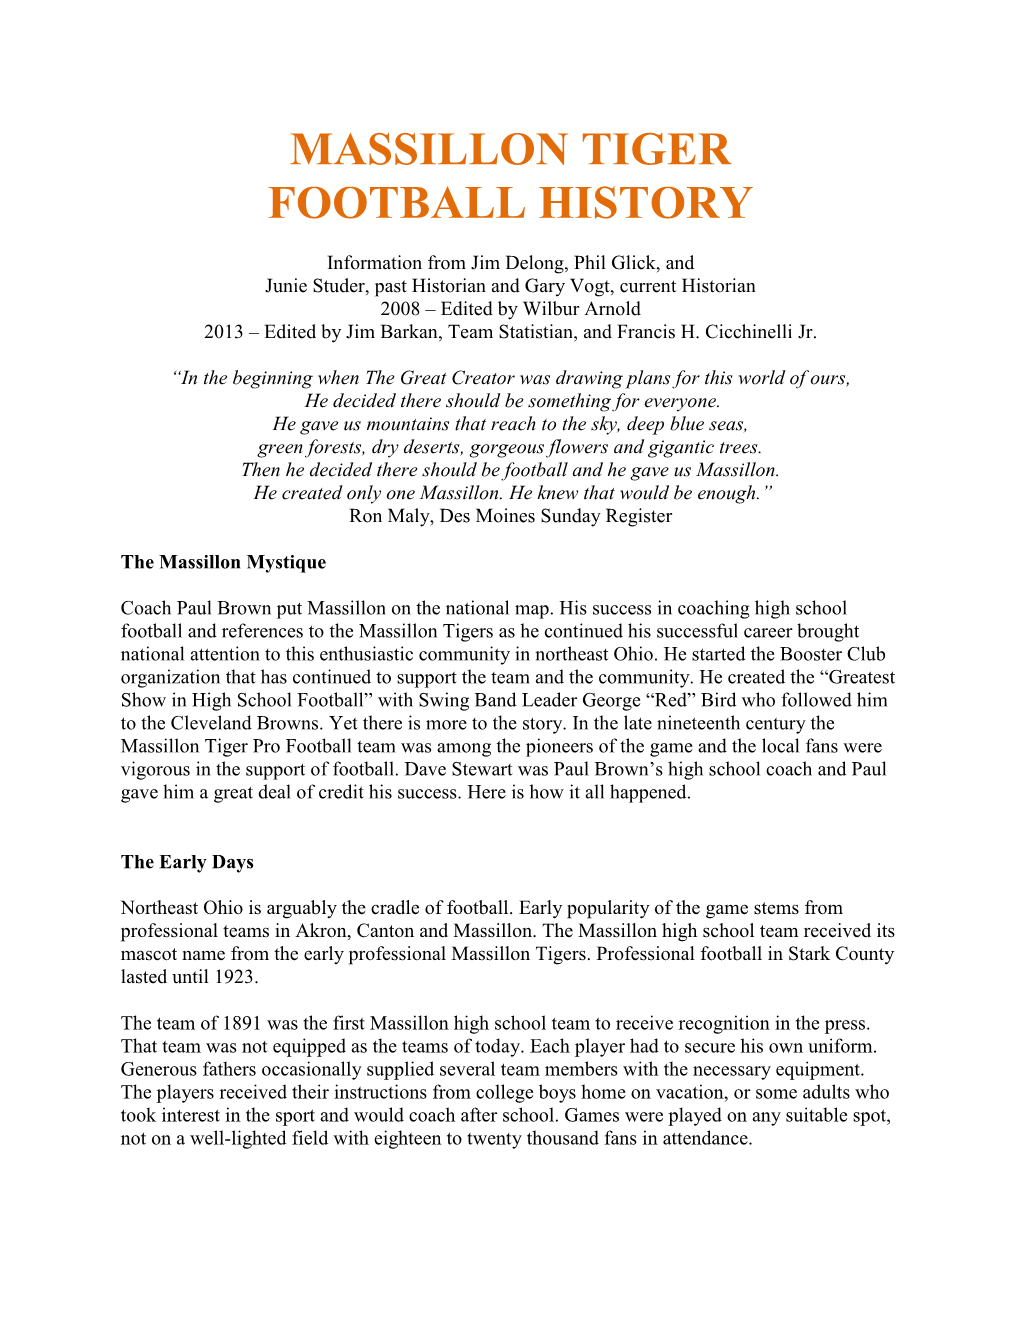 Massillon Tiger Football History